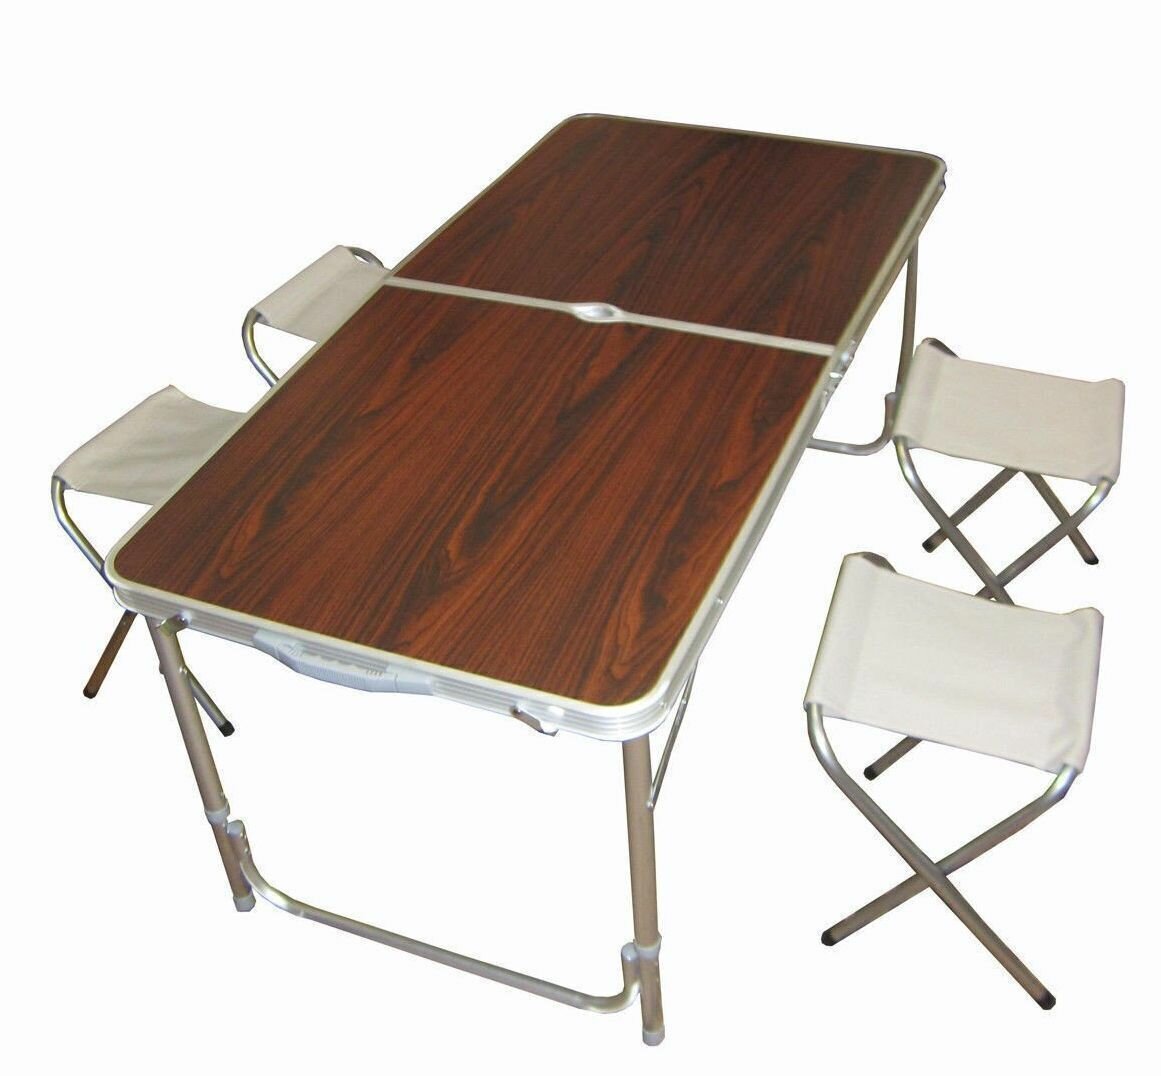 Набор стол + 4 стула Boyaby алюминиевый 60x120 см, коричневый